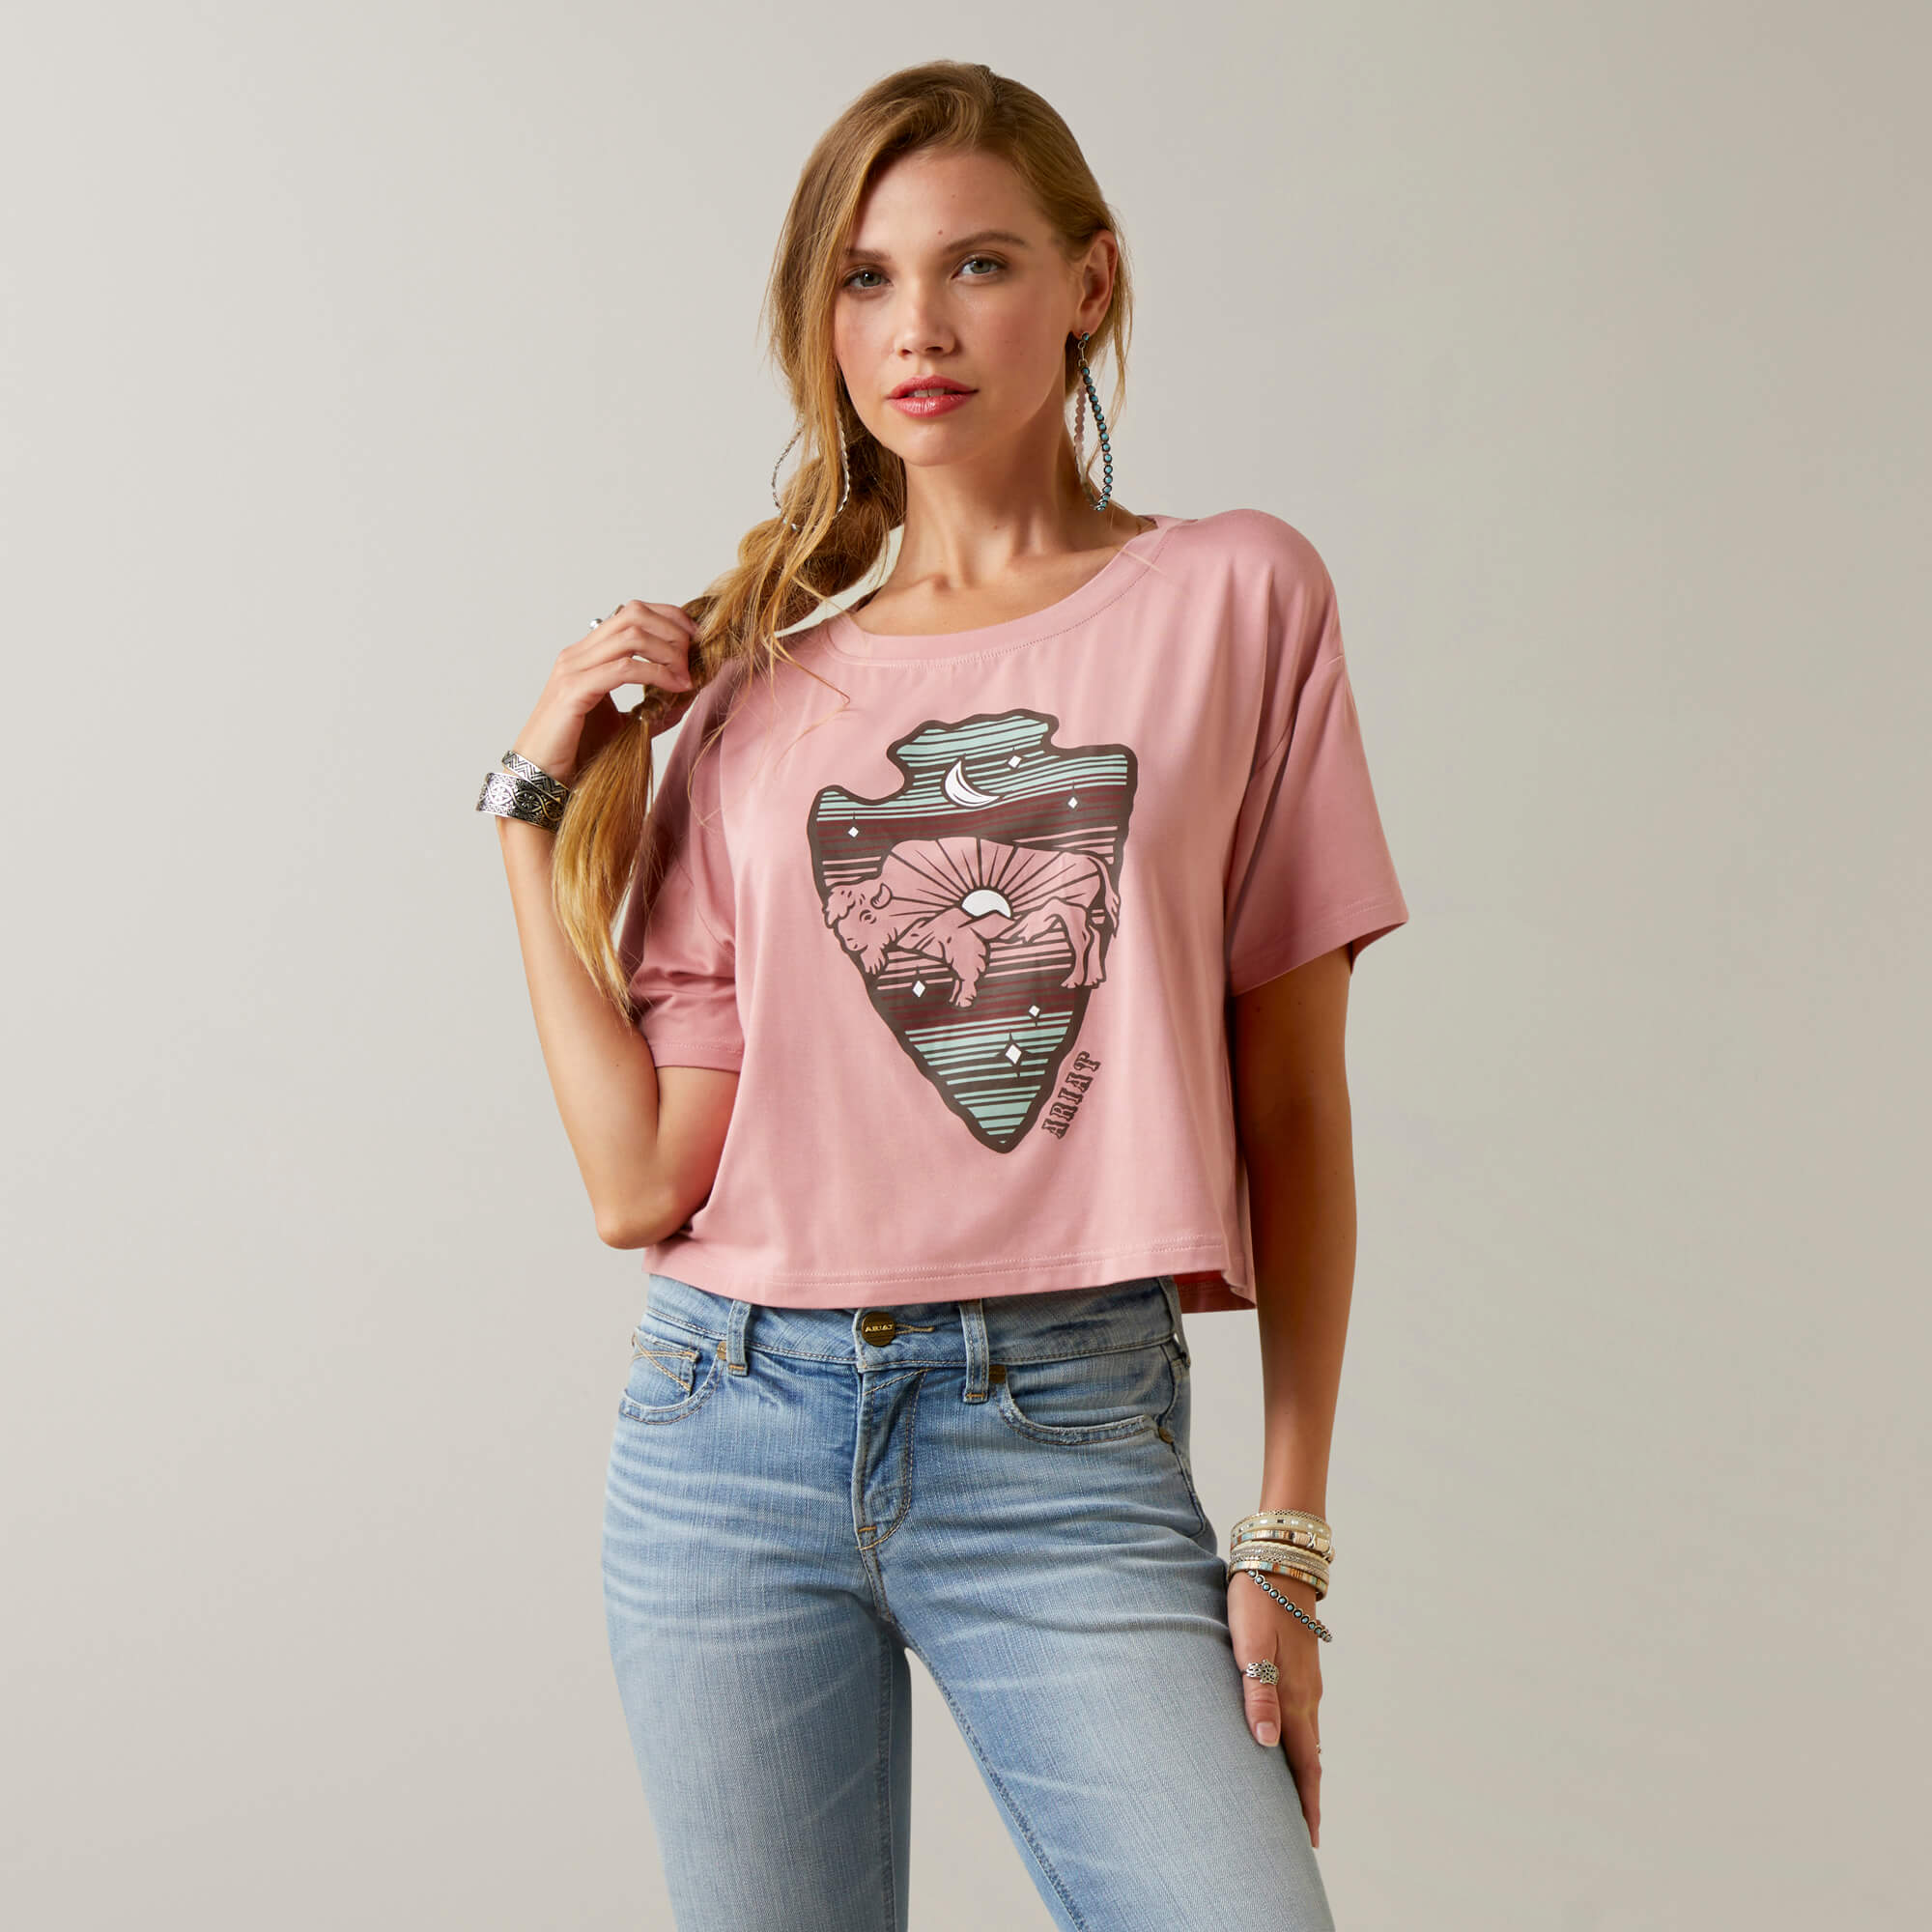 Ariat Women's Buffalo Rising T-Shirt